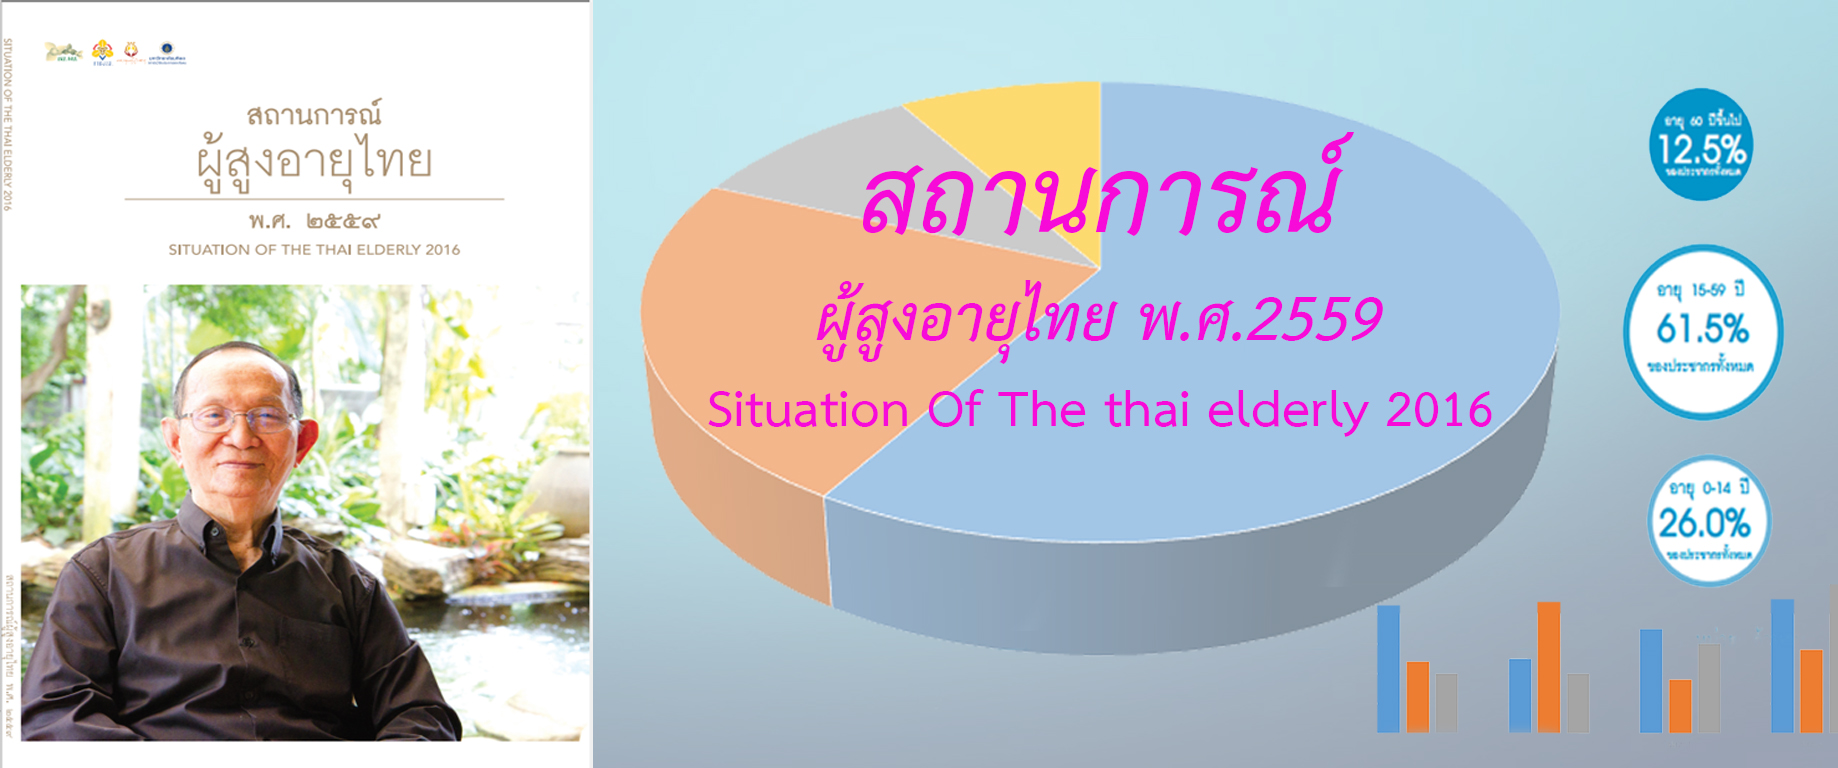 เล่มสถานการณ์ผู้สูงอายุไทย สถานการณ์ ผู้สูงอายุไทย พ.ศ. 2559 (Situation Of The thai elderly 2016 )